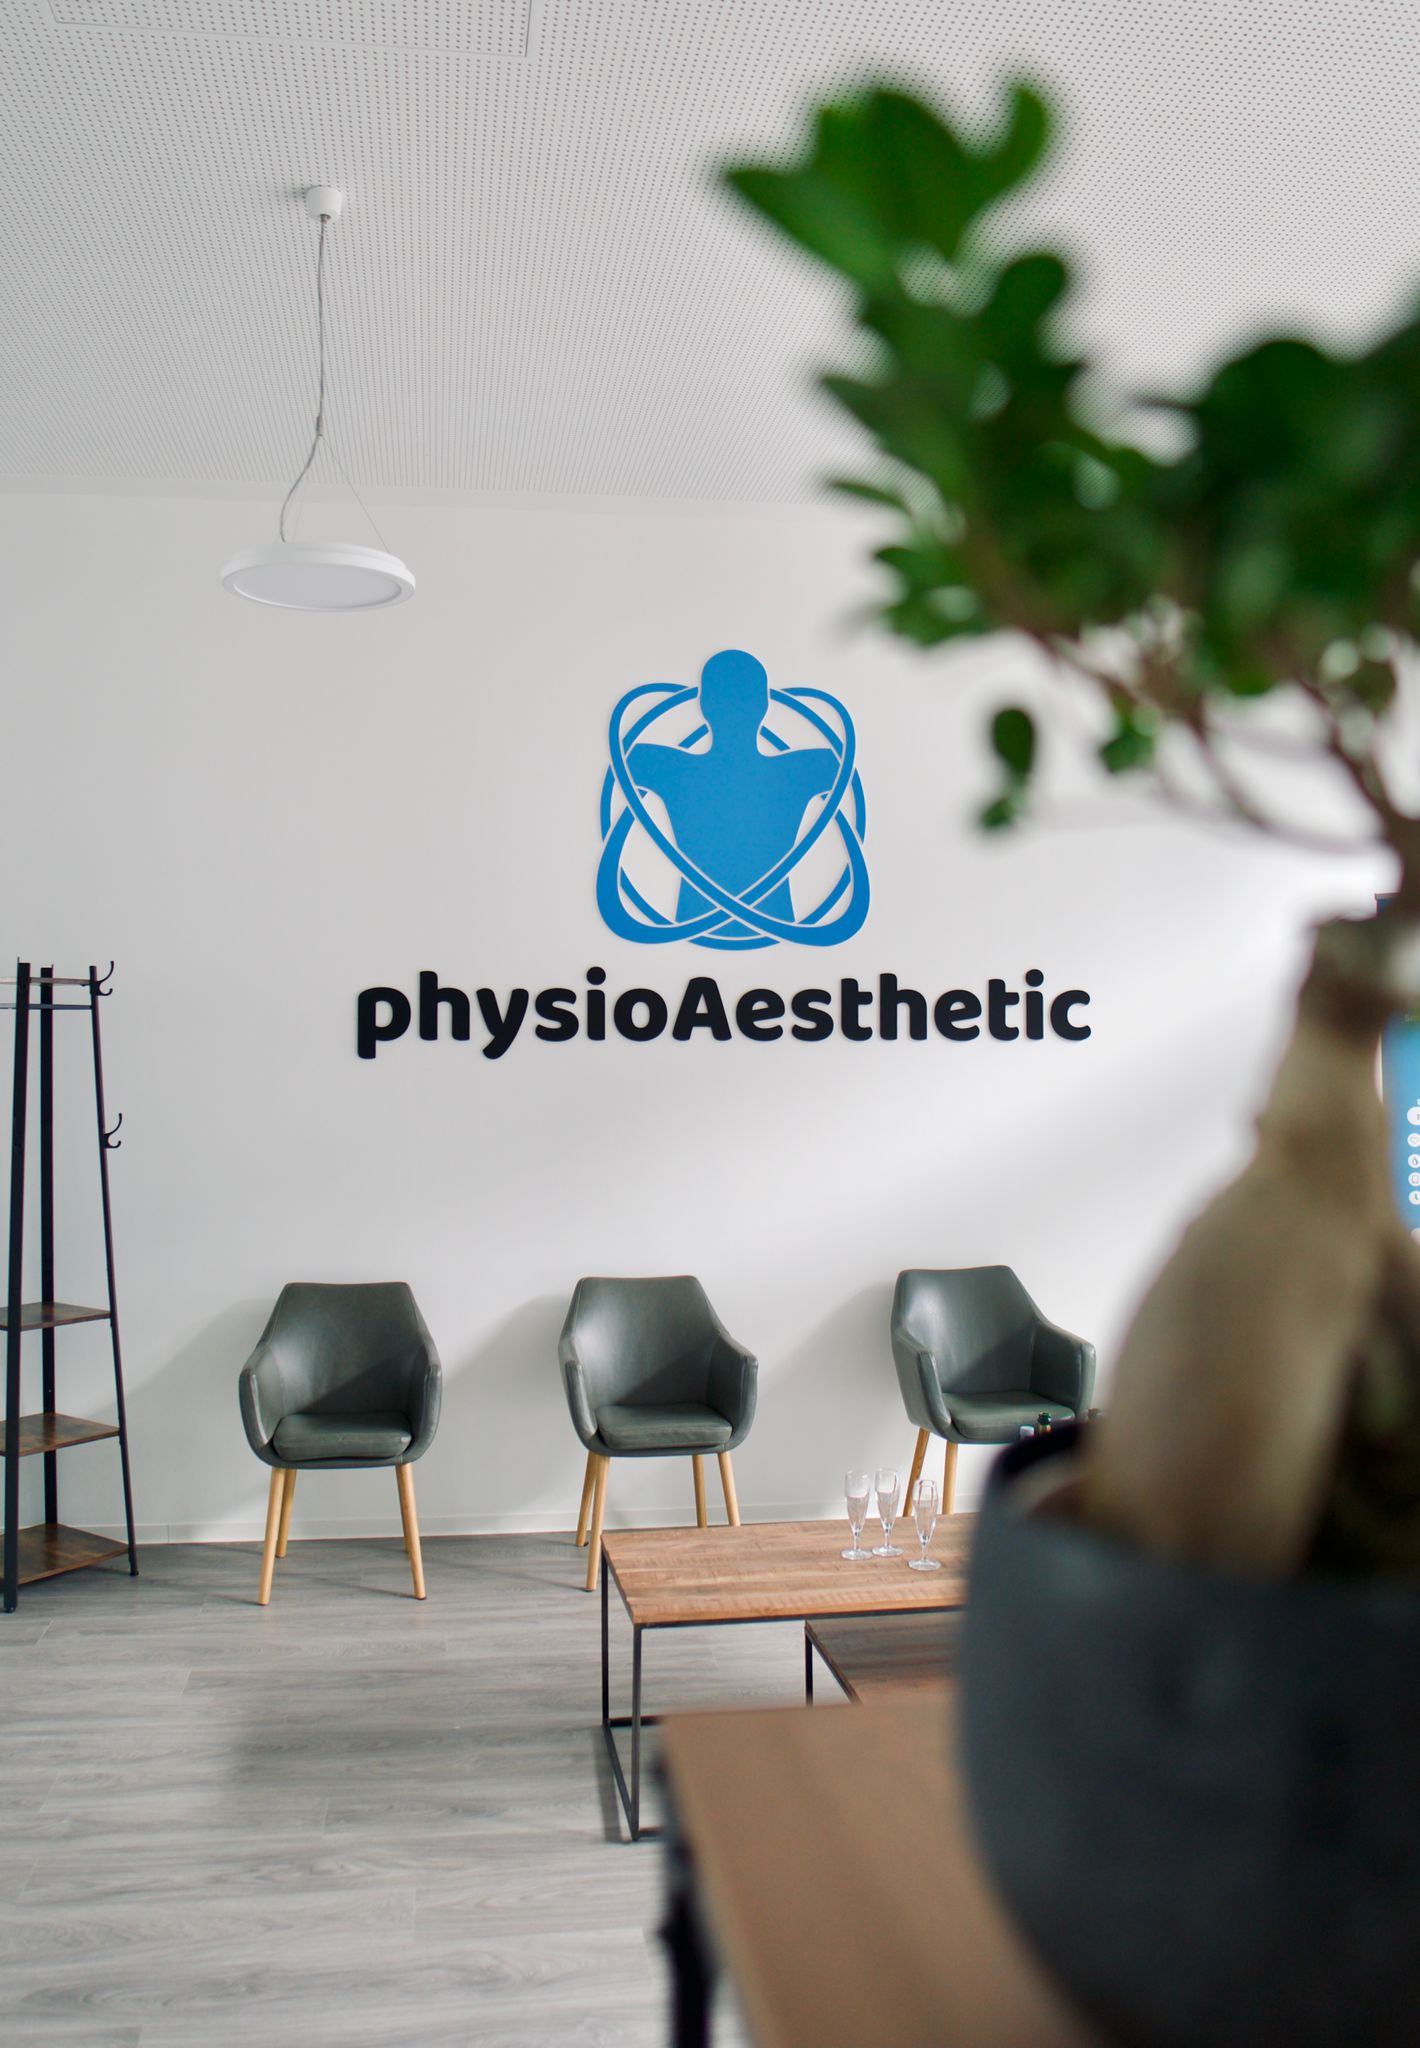 Bilder physioAesthetic | Praxis für Physiotherapie und Ergotherapie